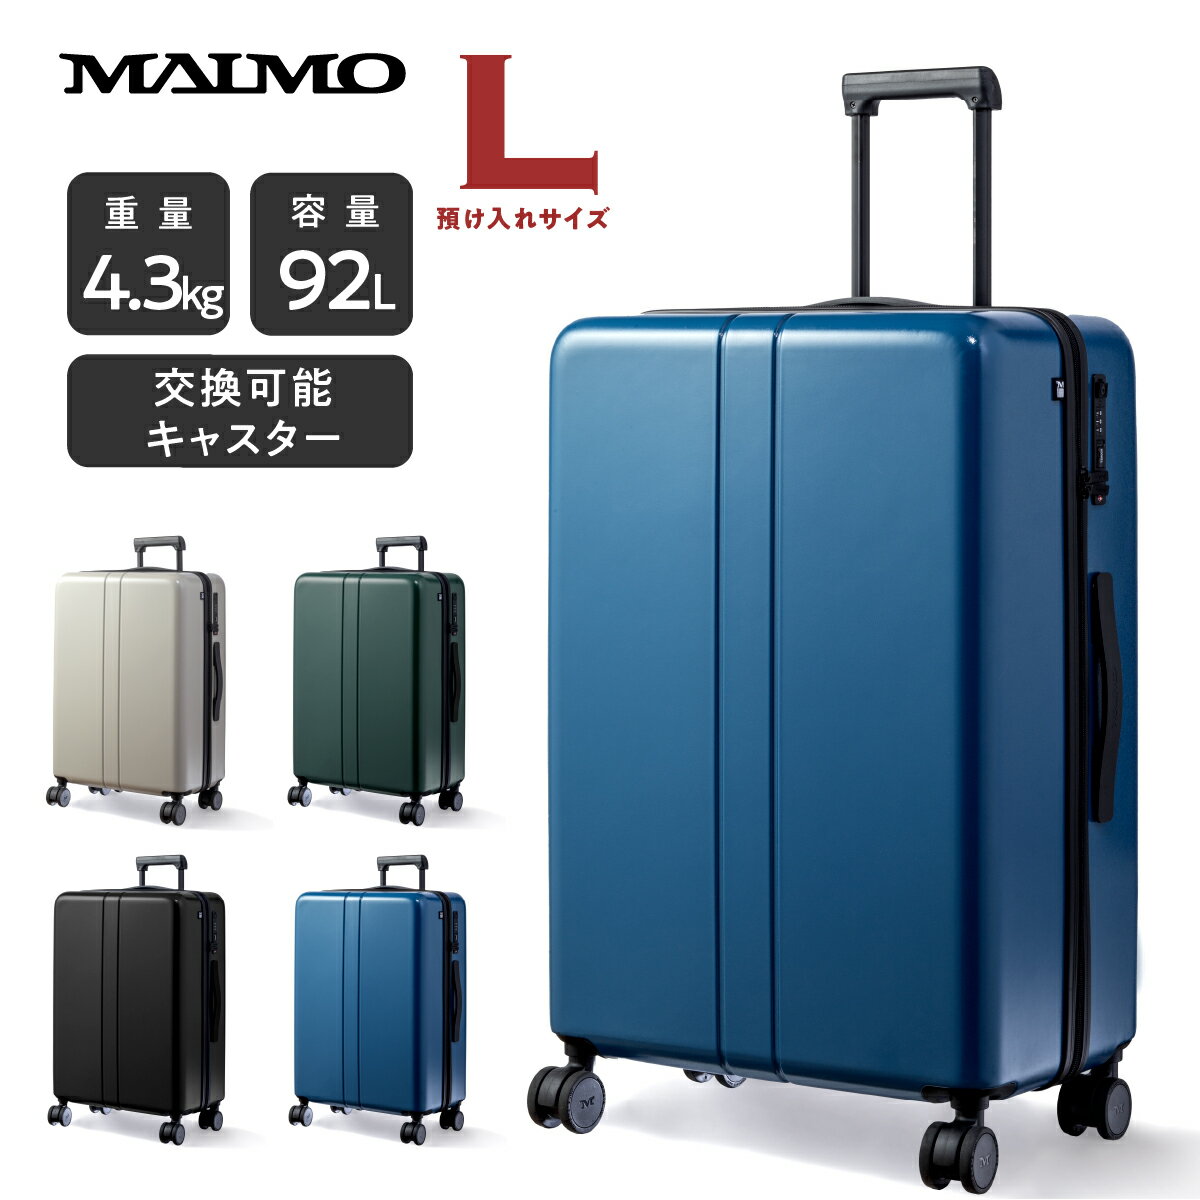 MAIMO スーツケース 日本企業 キャリーケース Lサイズ 交換可能キャスター 大型 軽量 高機能 高品質 USBポート付き 大容量 ファスナー TSAロック HINOMOTO 静音 ダブルキャスター 360度回転 即日発送 1年保証 旅行 帰省 ビジネス シンプル キャリーバッグ